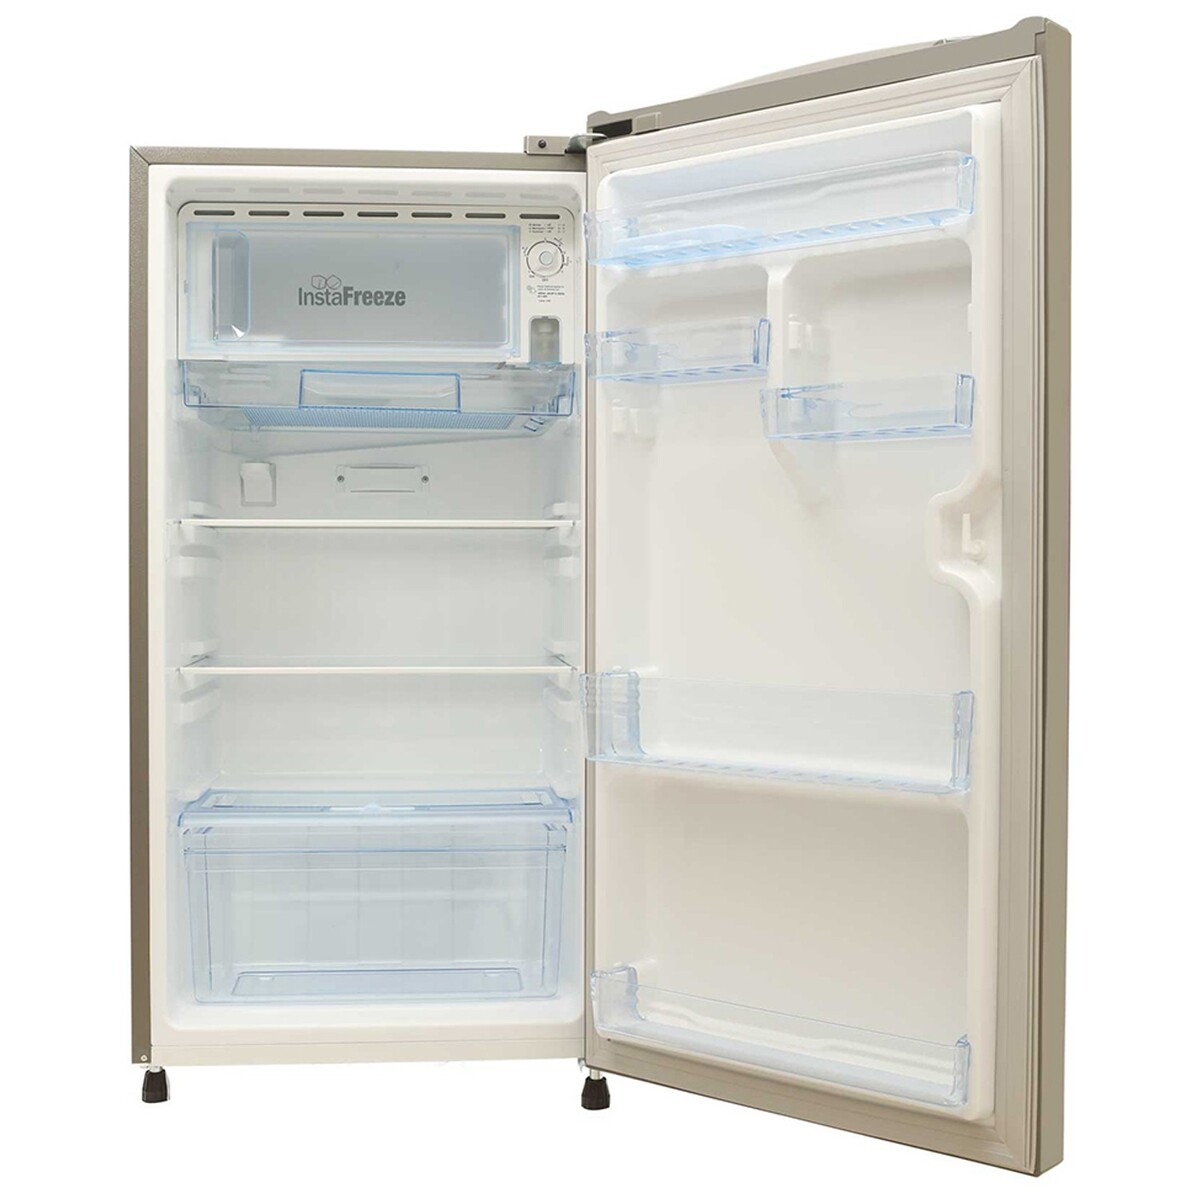 Lloyd Direct Cool Single Door Refrigerator GLDF213SRGT2EB 200L Royal Grey